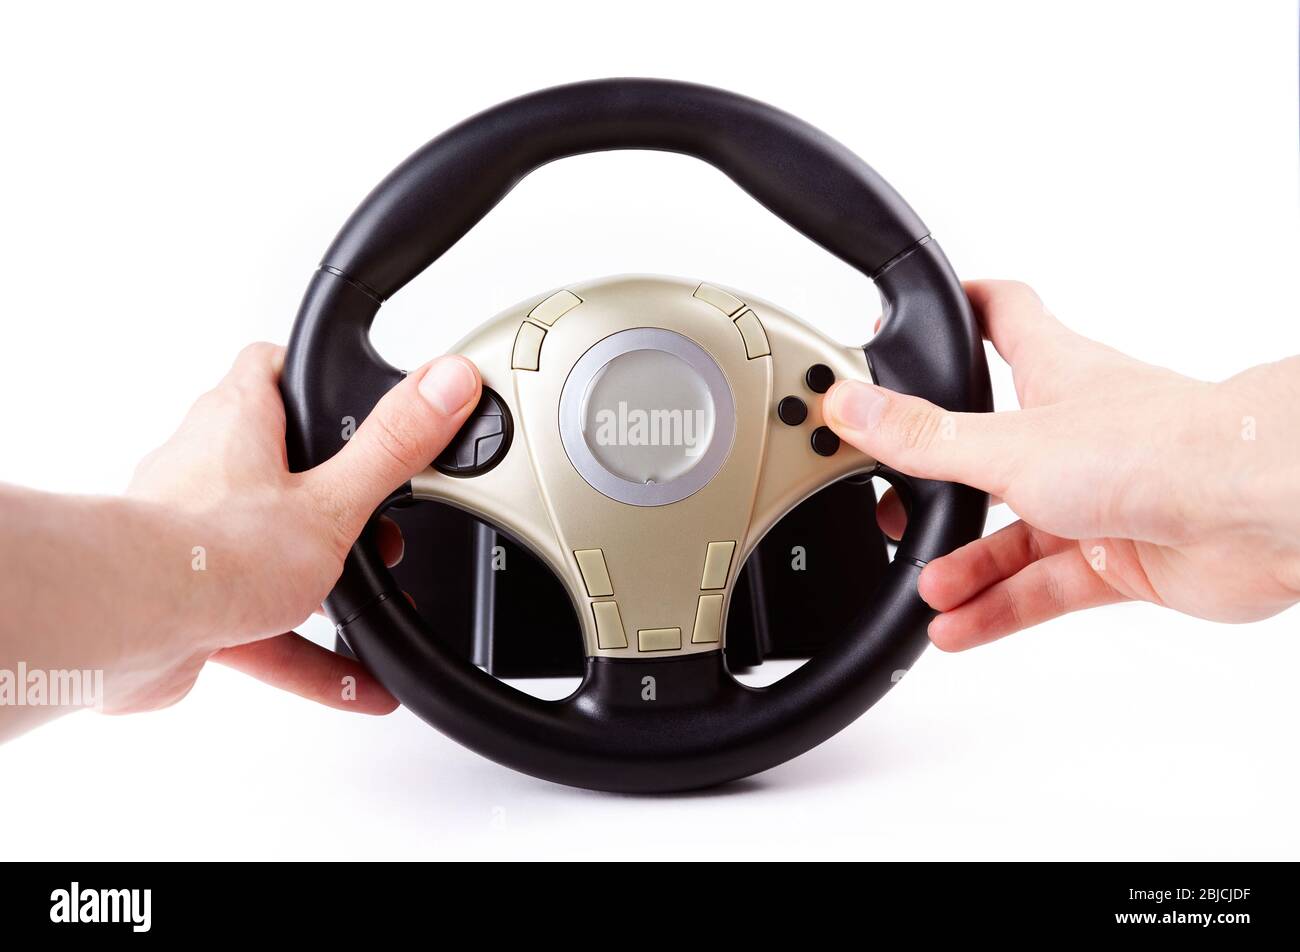 Racing Lenkung Arcade-Rad-Controller, beide Hände halten Autorades Spiel-Controller mit vielen Tasten isoliert auf weiß, erste Person-Ansicht Stockfoto